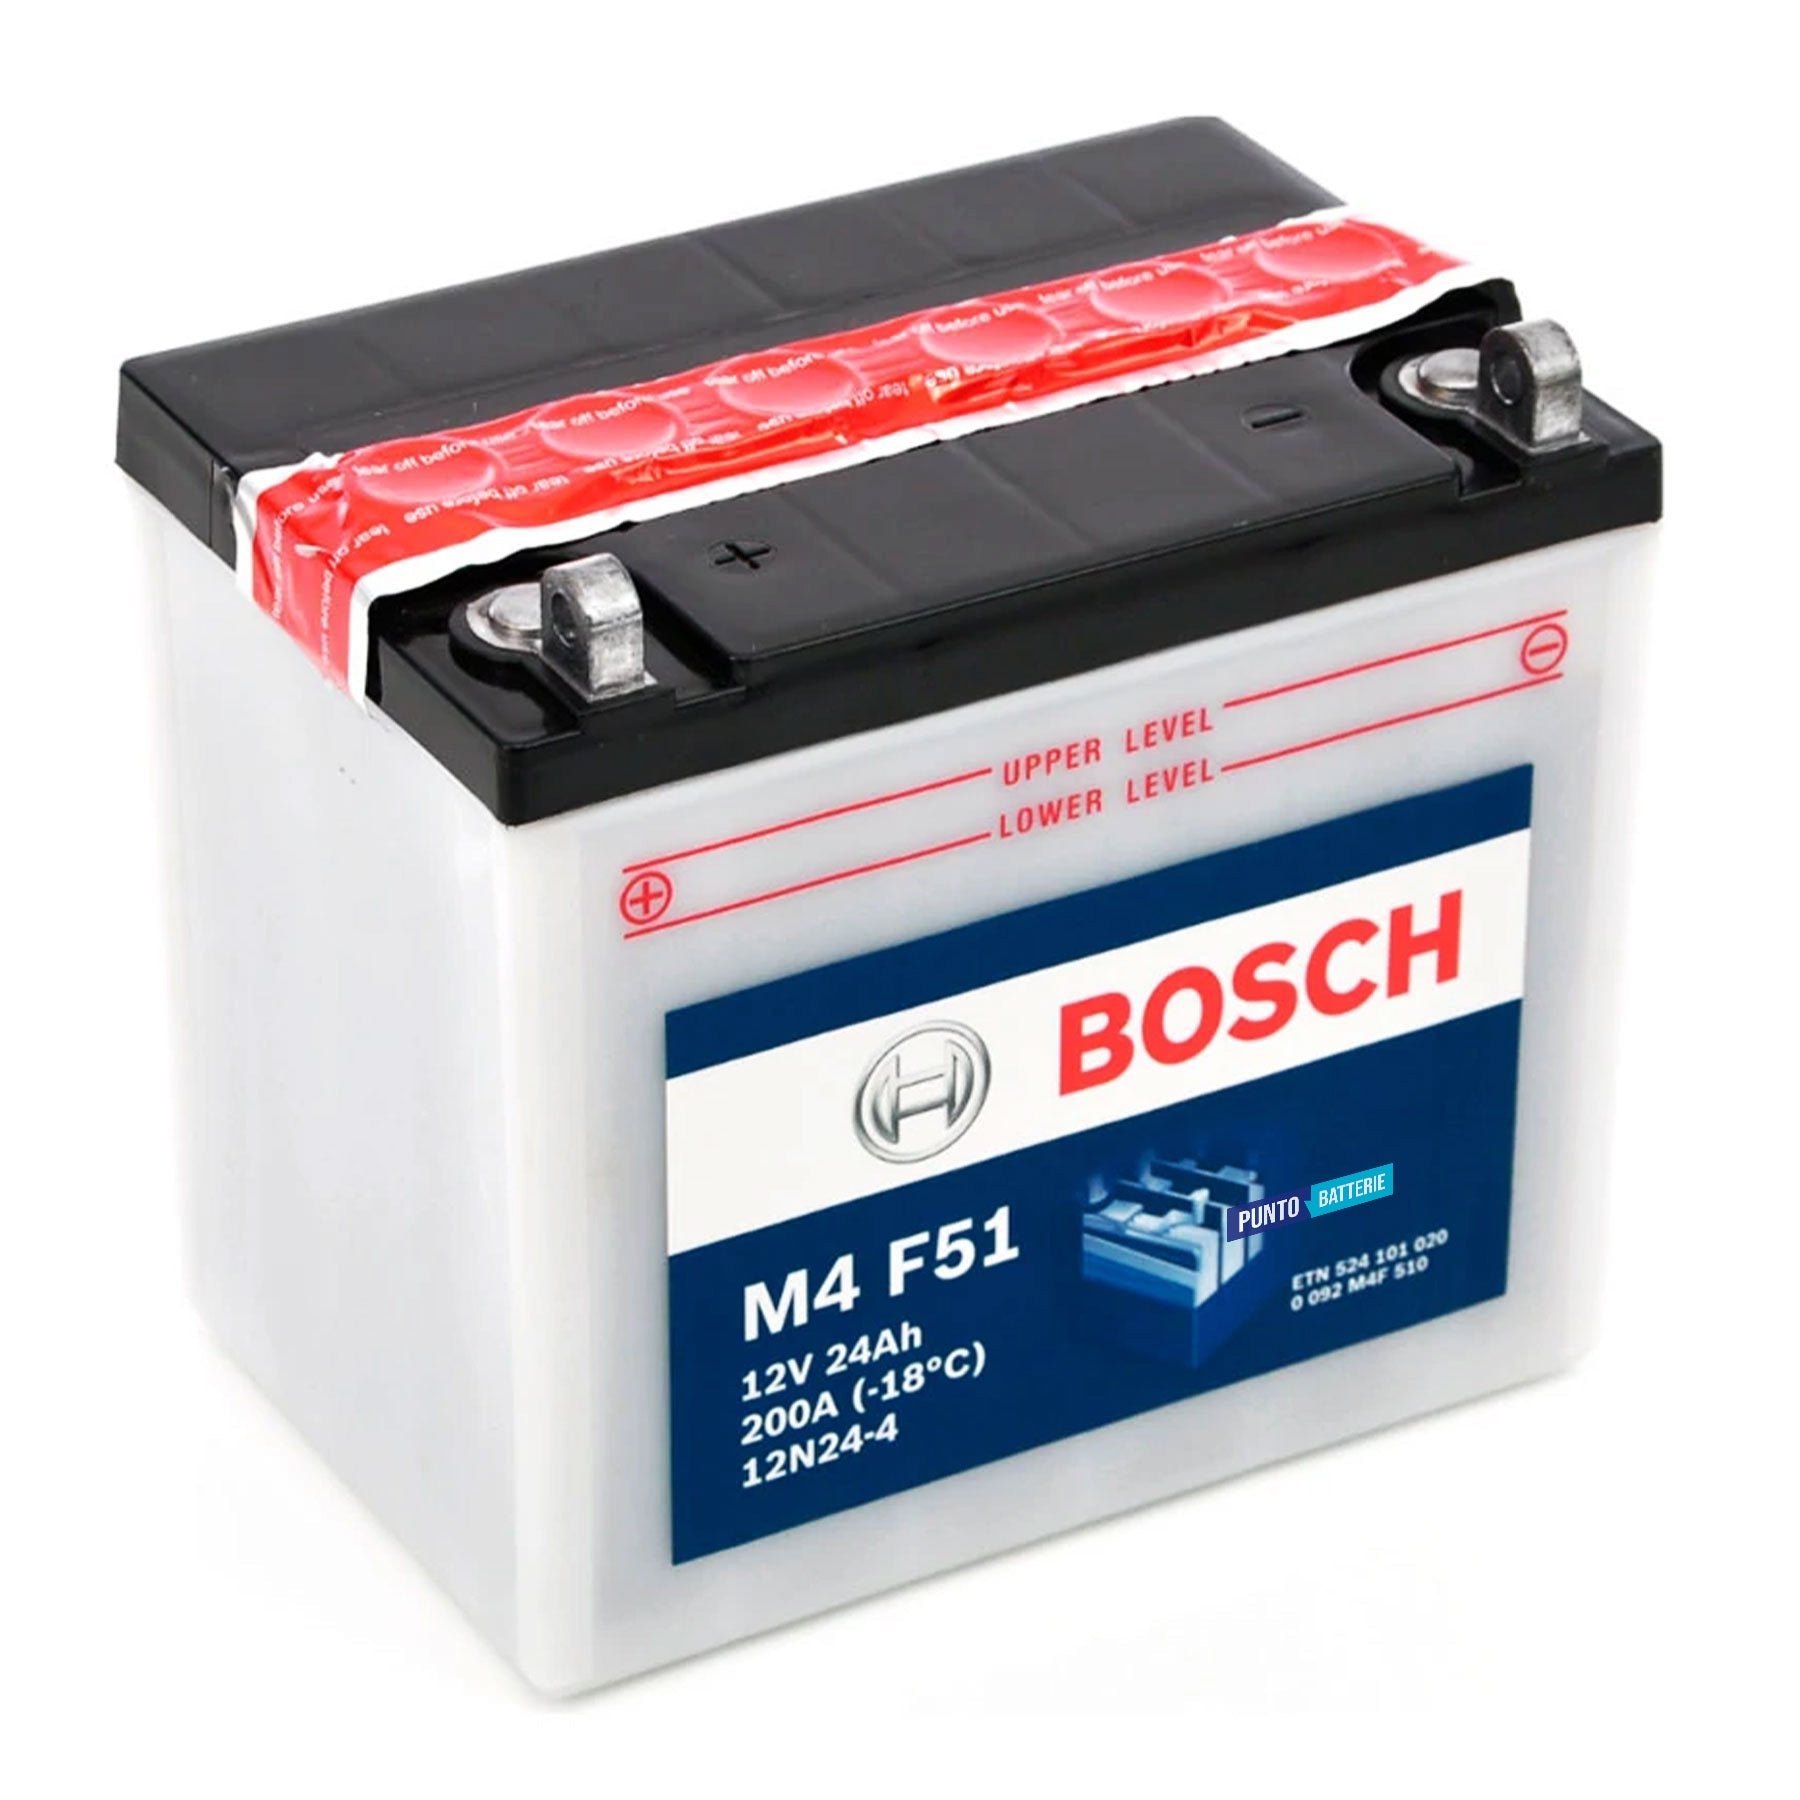 Batteria originale Bosch M4 M4F51, dimensioni 184 x 124 x 175, polo positivo a sinistra, 12 volt, 24 amperora, 200 ampere. Batteria per moto, scooter e powersport.